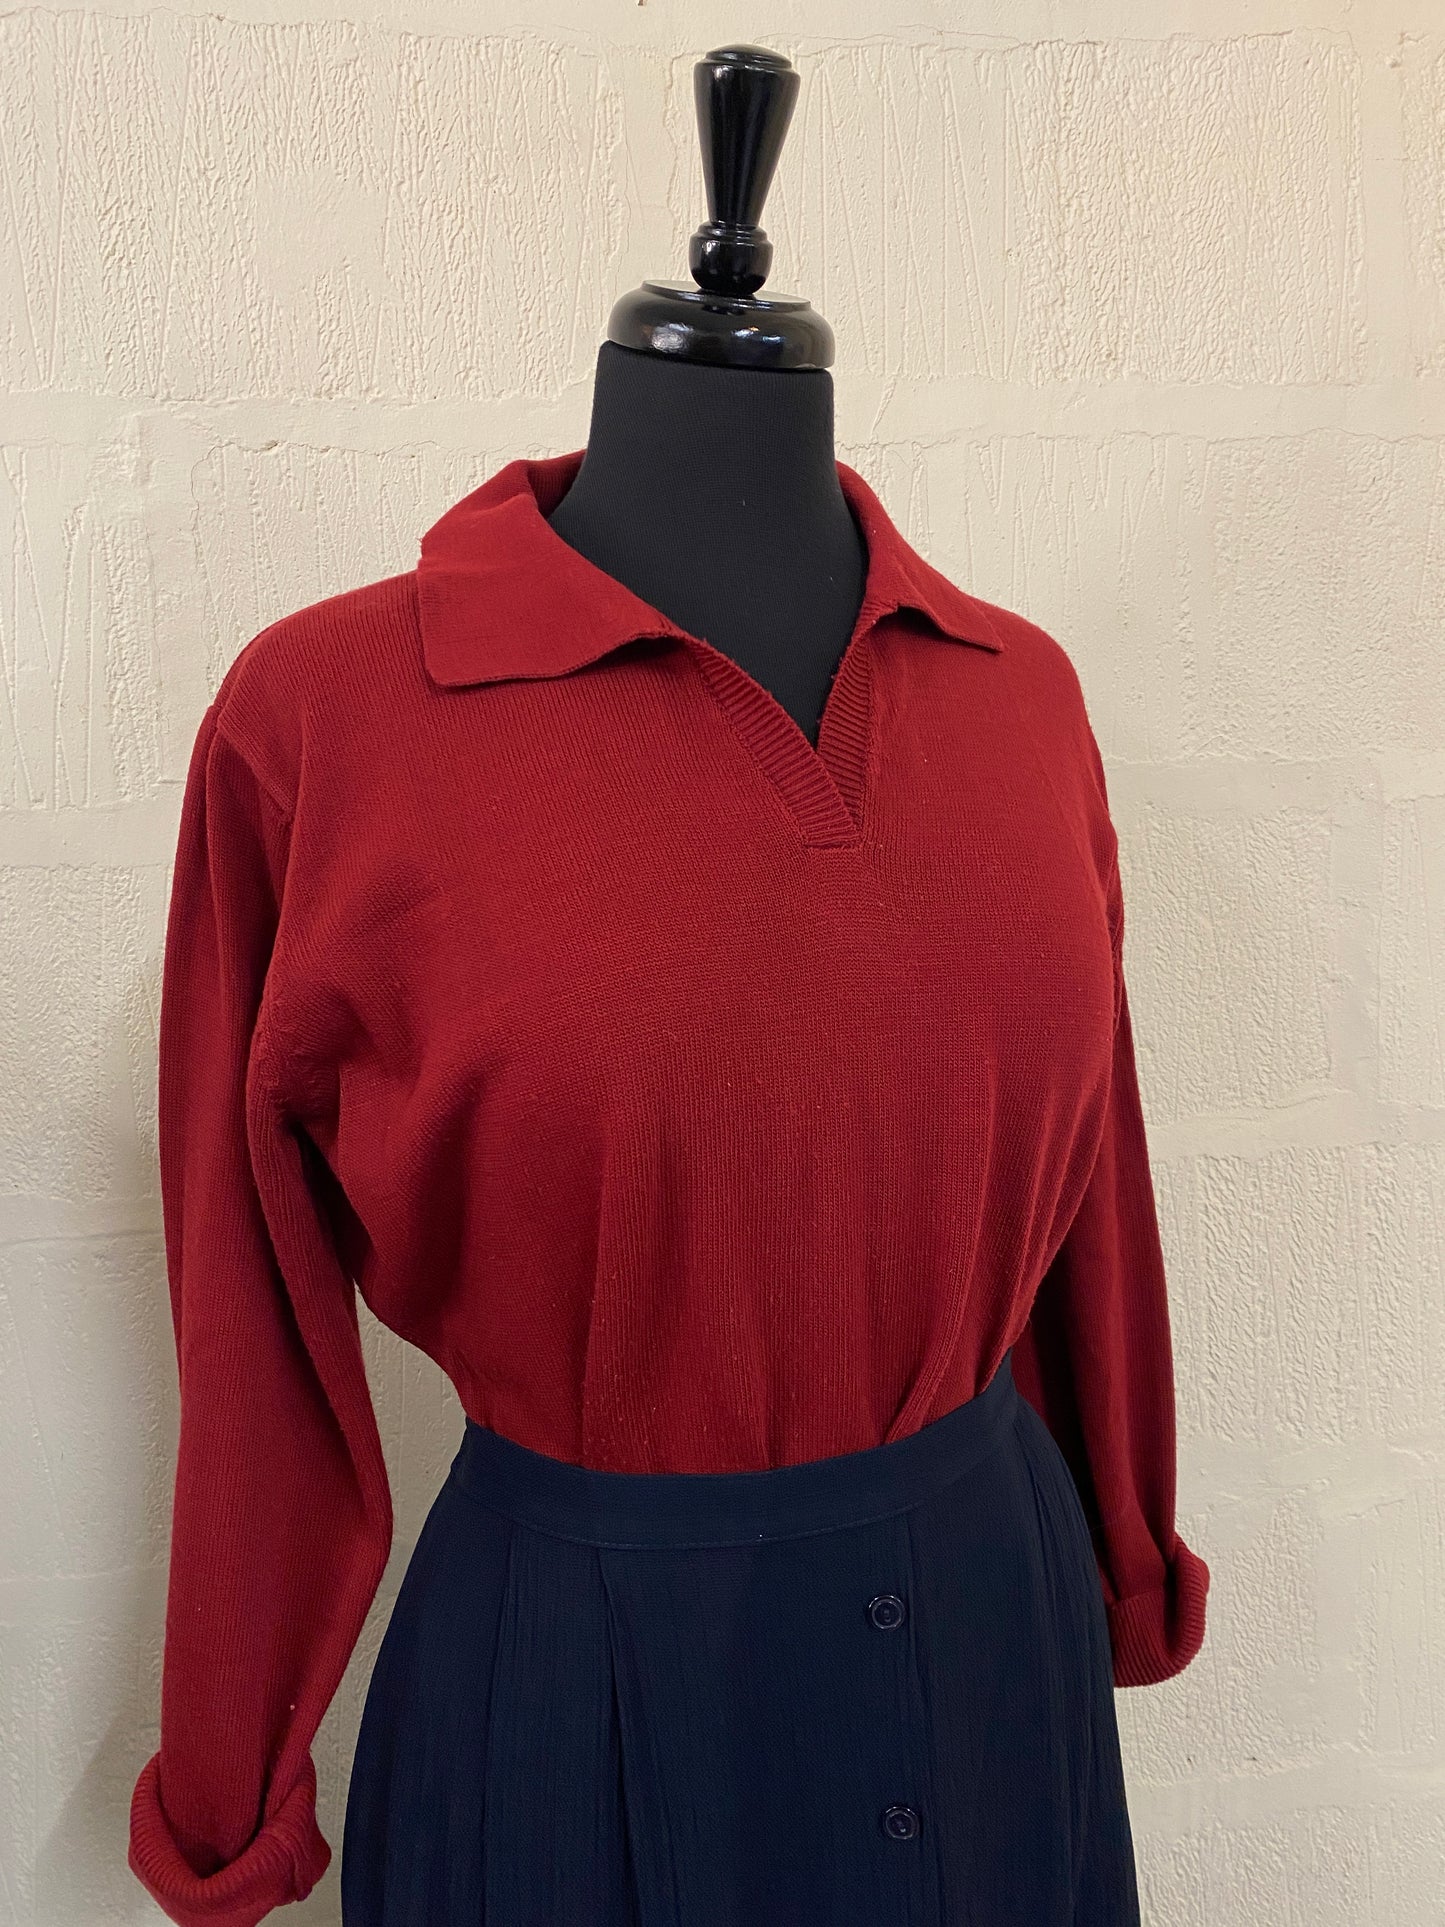 Vintage Dark Red Woollen Pullover Size 16-18